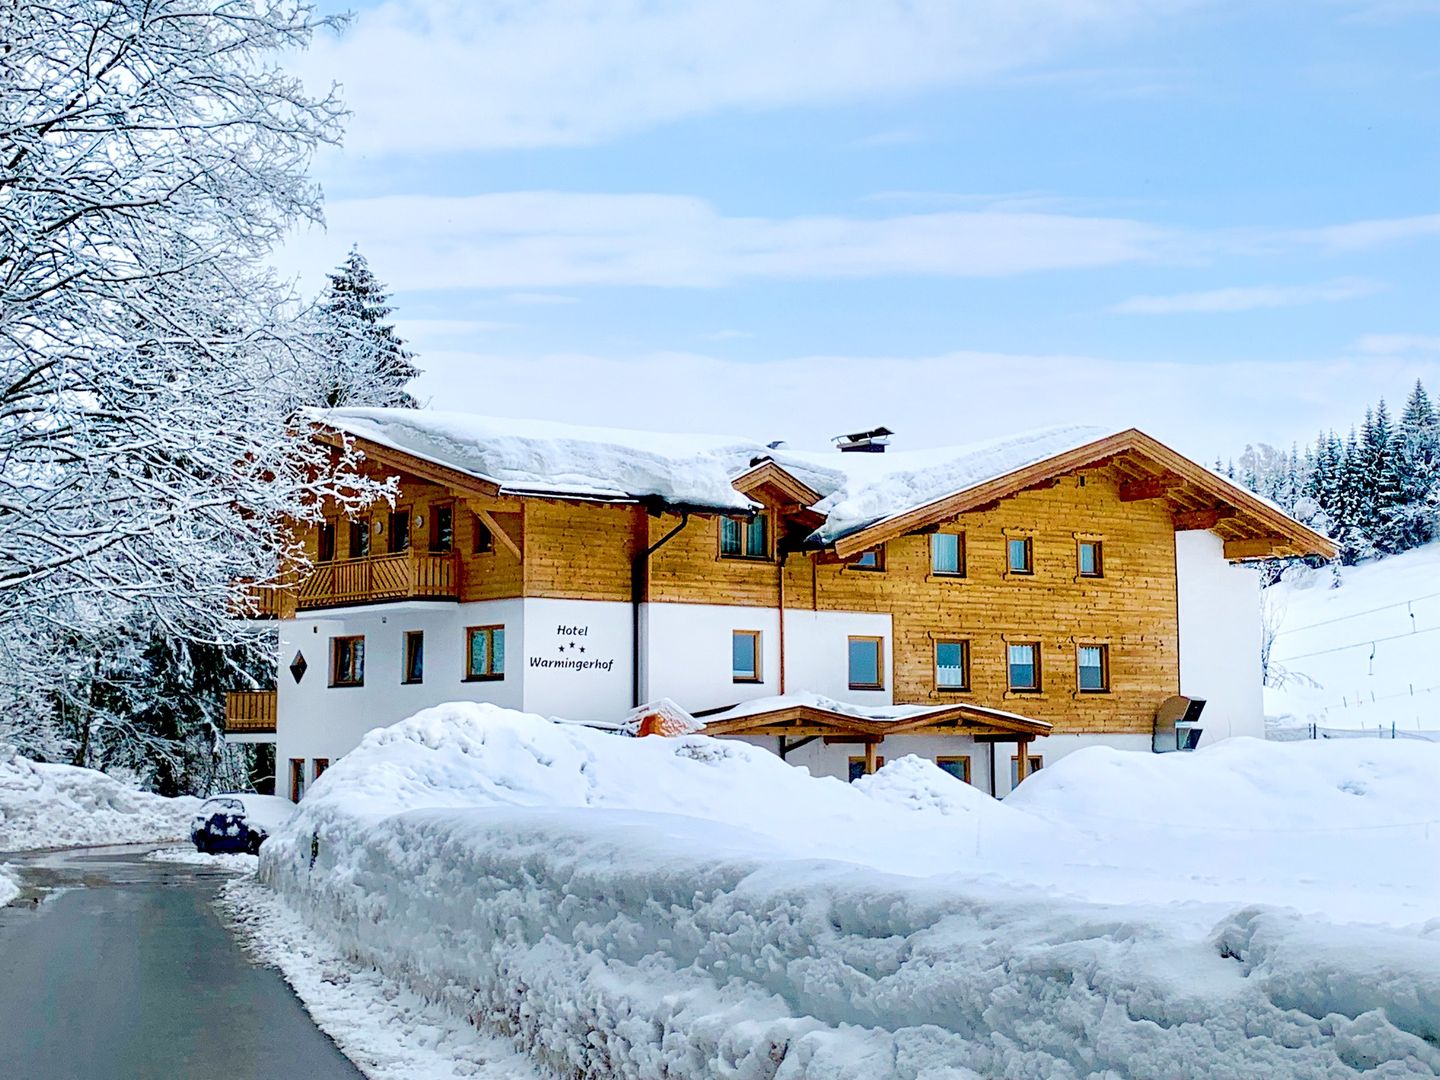 Meer info over Skihotel Warmingerhof  bij Wintertrex